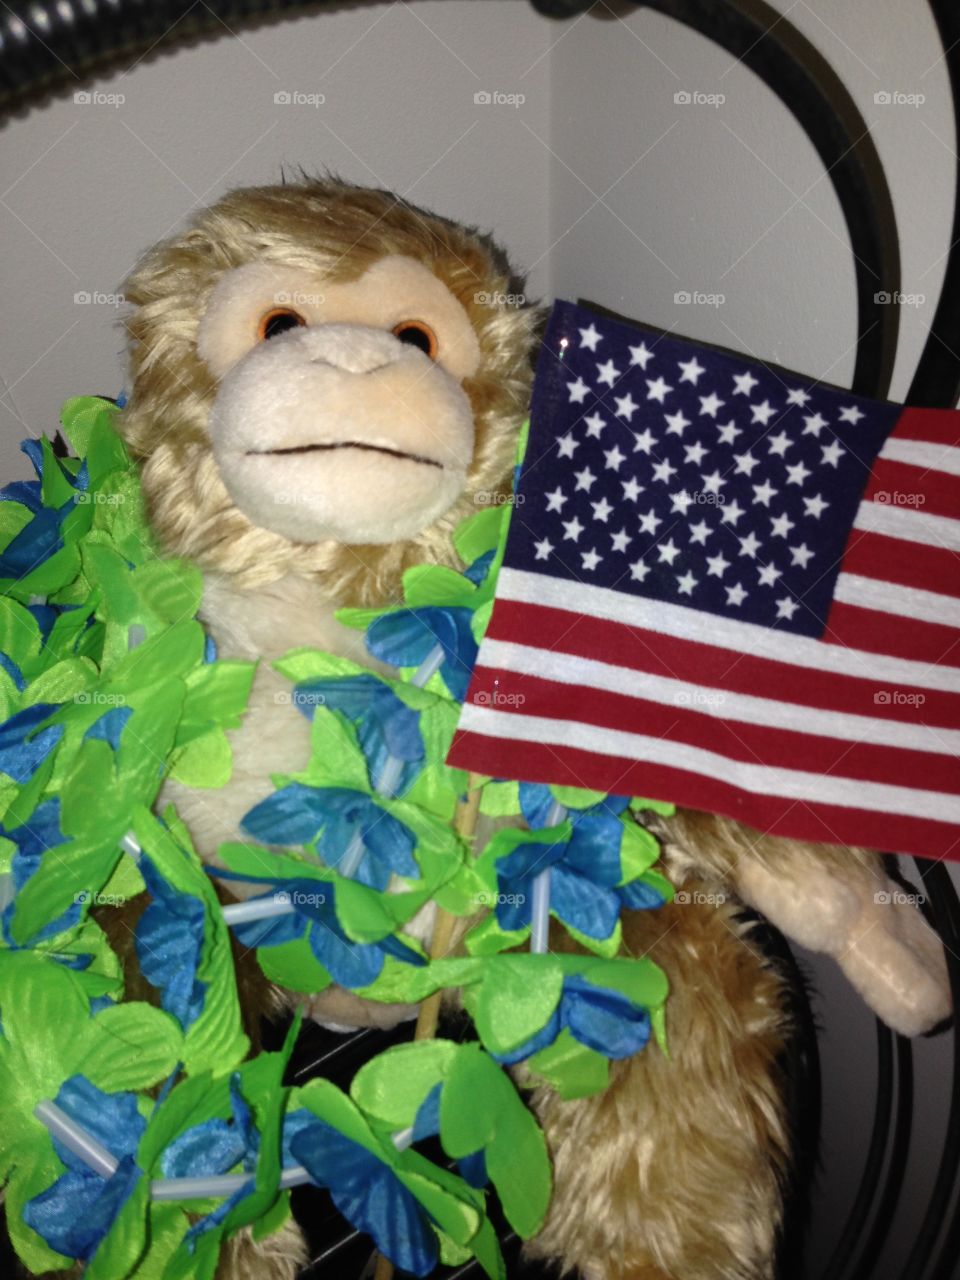 Patriotic monkey 